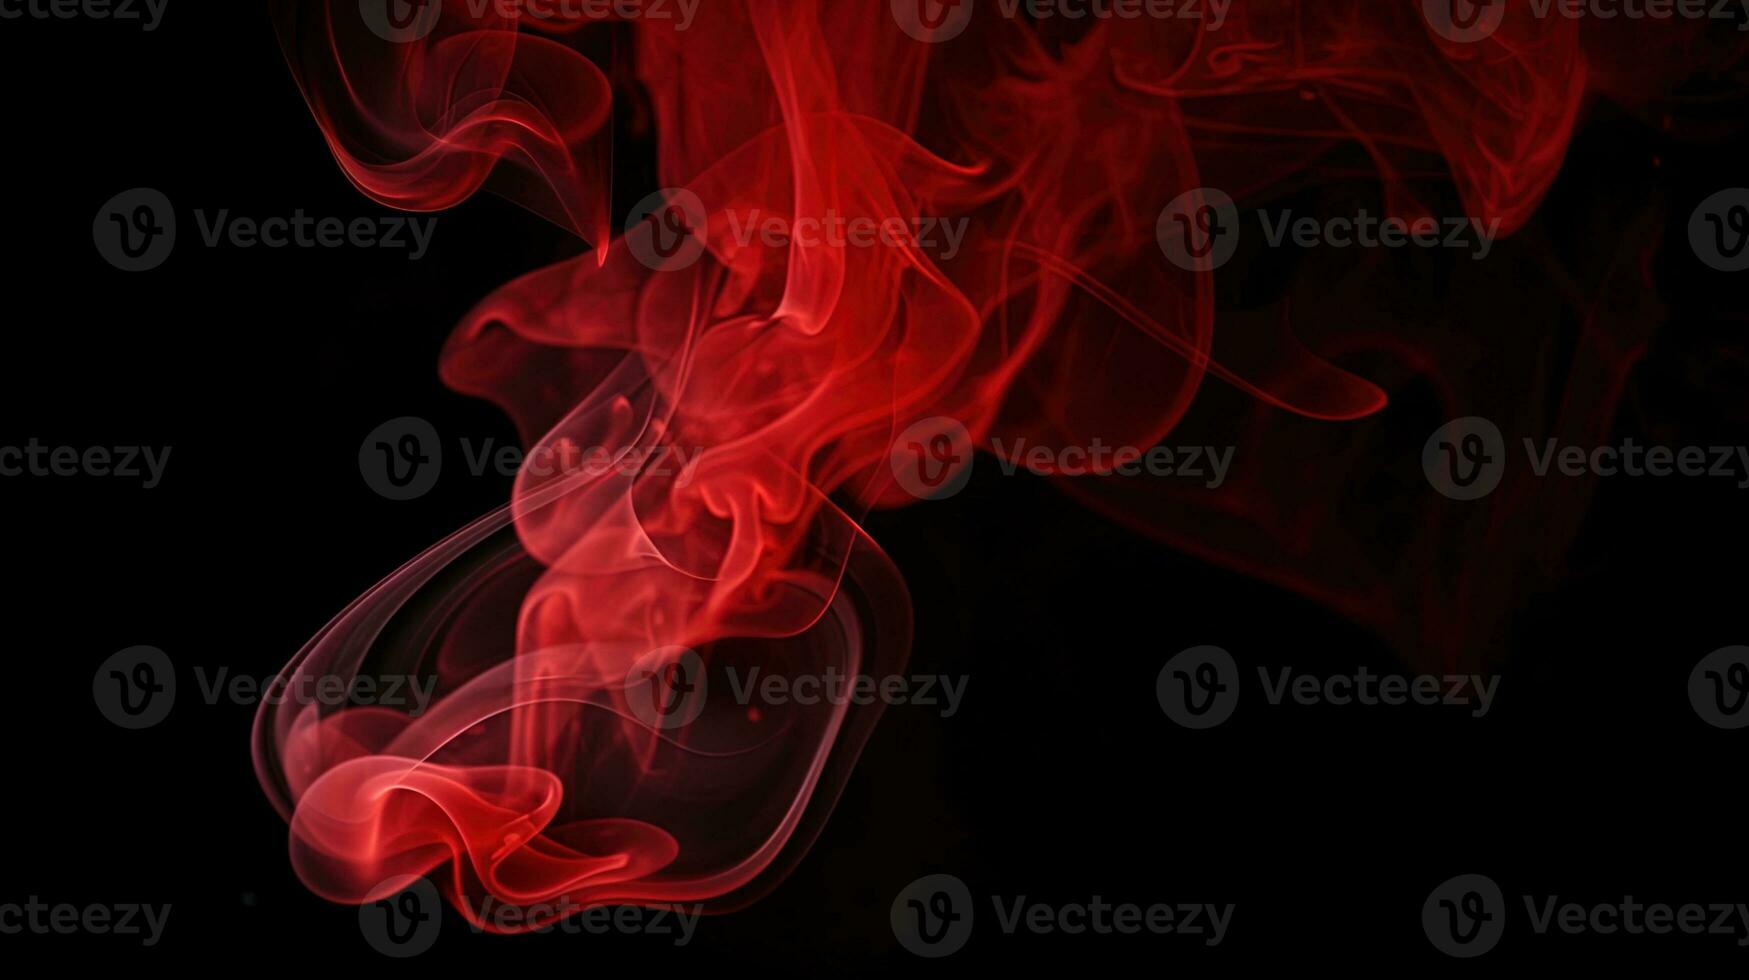 röd rök på svart bakgrund. abstrakt färgrik rök på svart bakgrund. foto